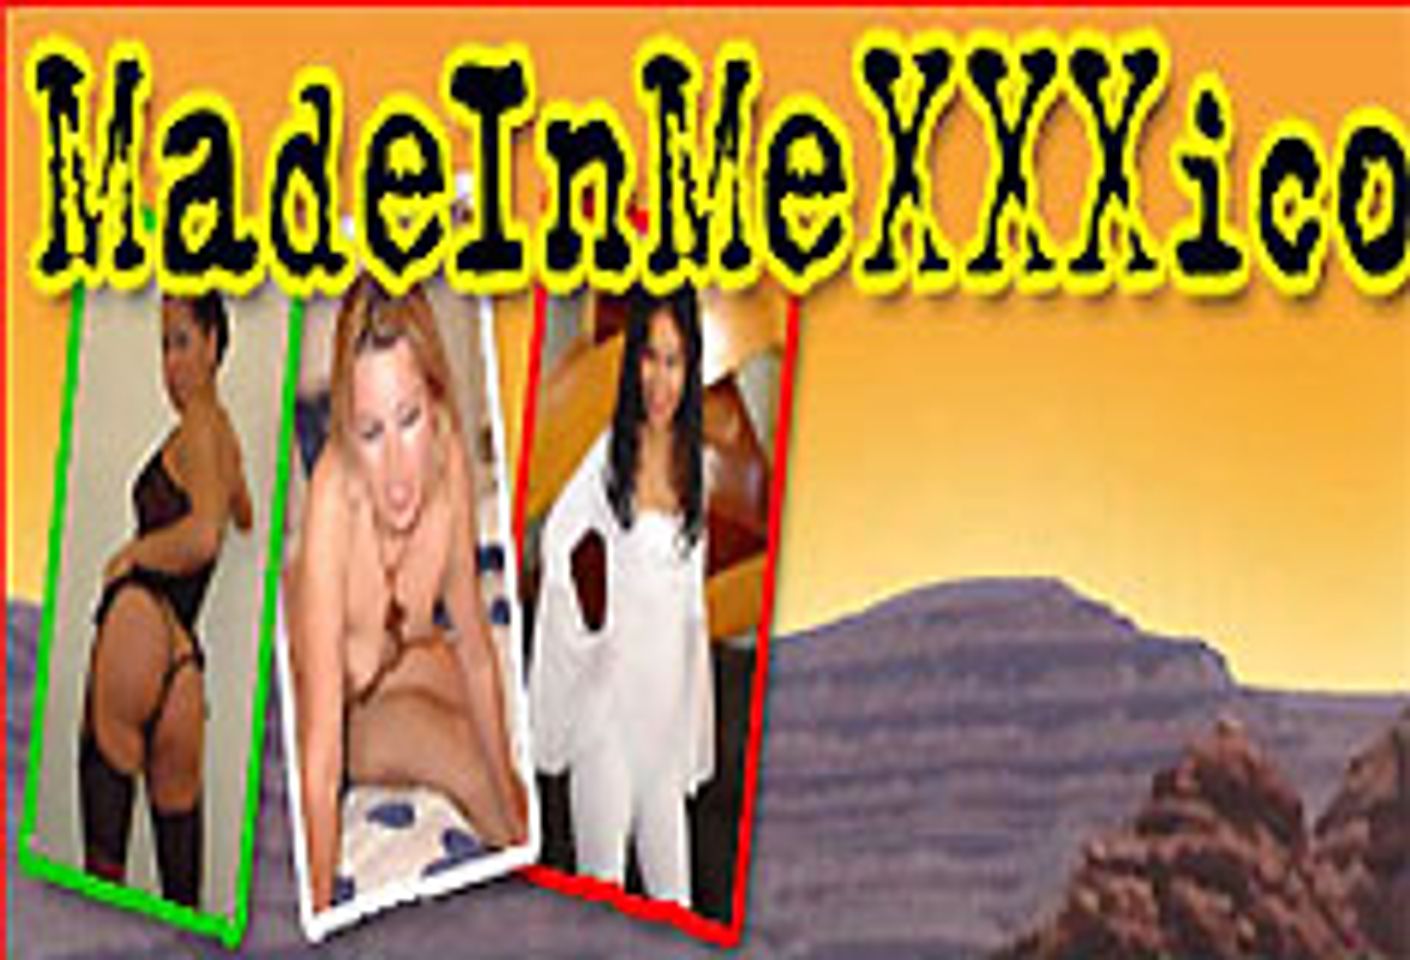 Introducing MadeinMeXXXico.com